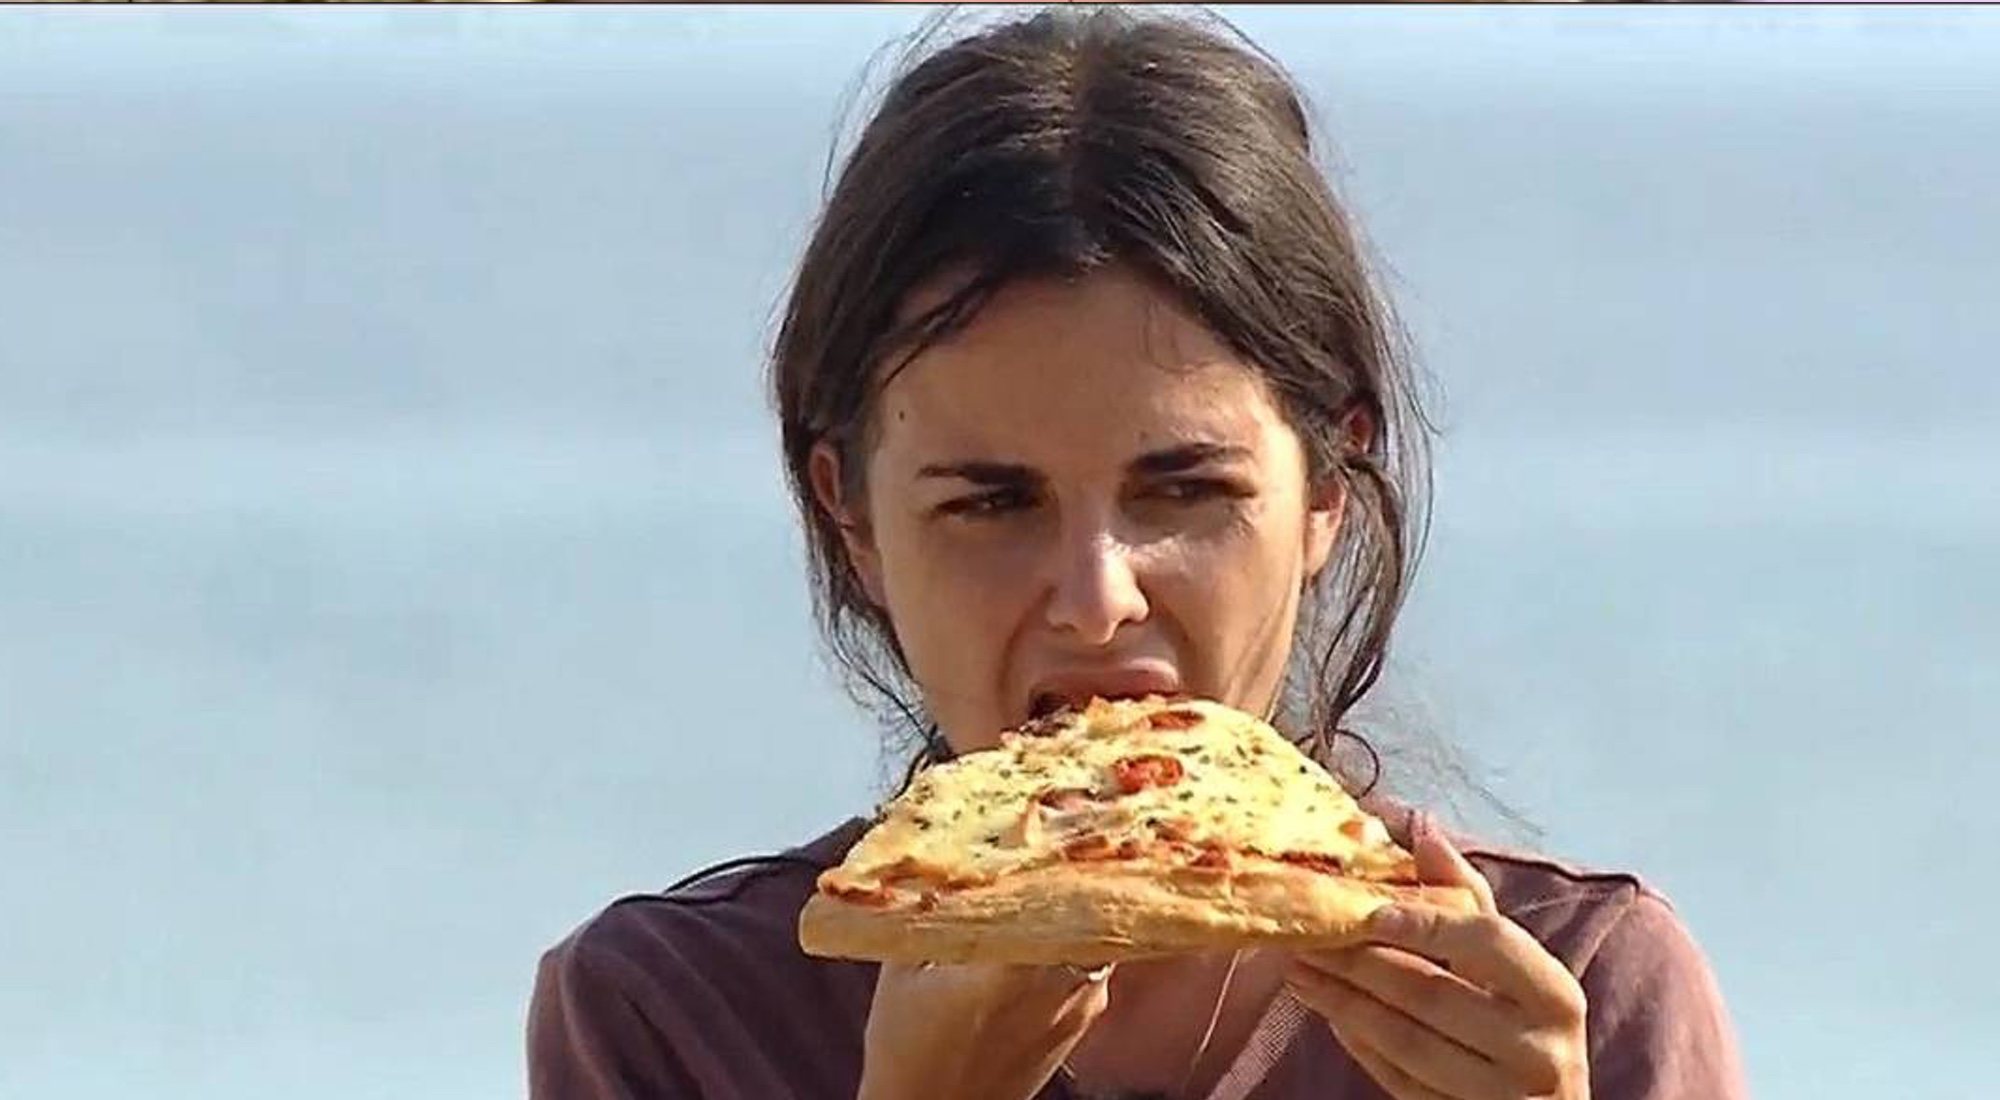 Alexia con la pizza que 'Supervivientes' le puso como juego